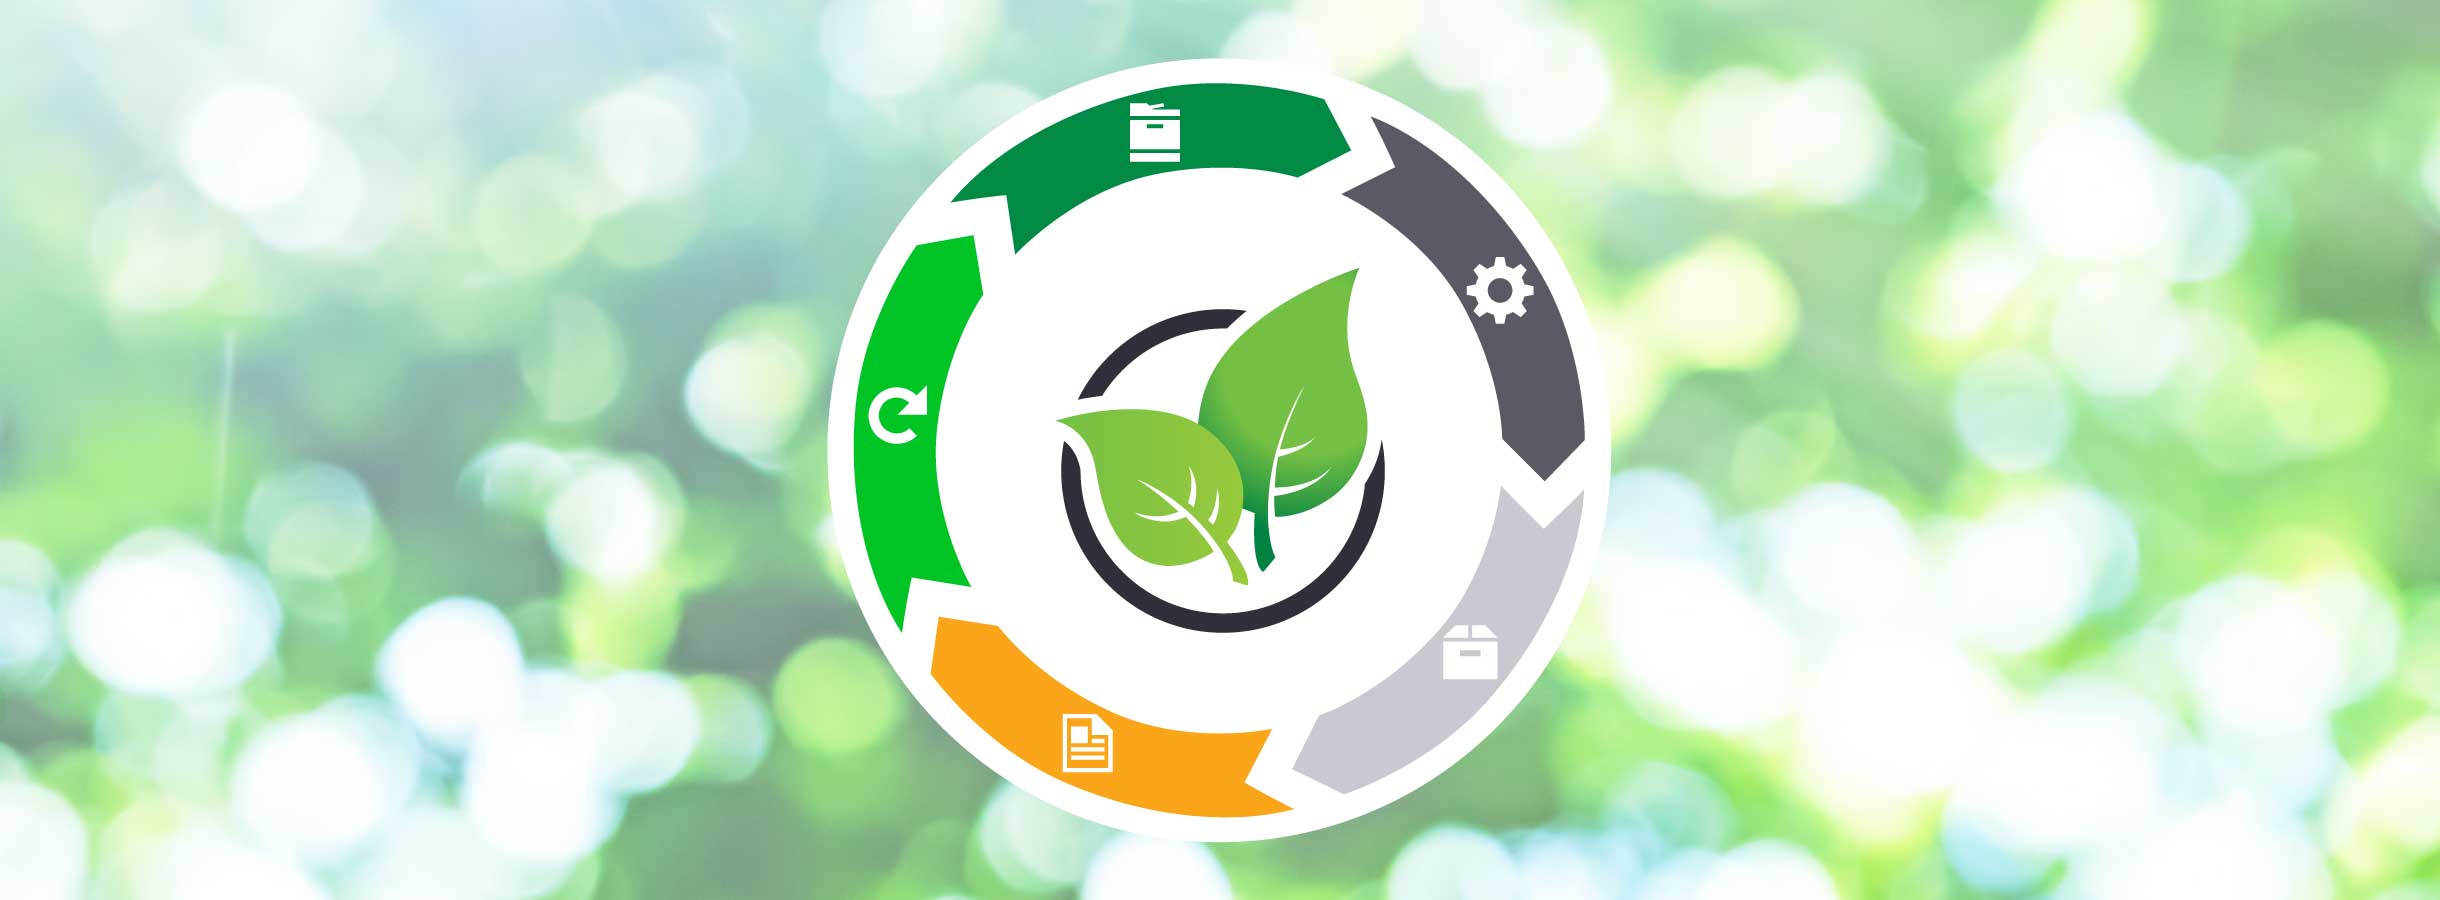 Ilustración del diseño circular de los productos sostenibles de Lexmark.